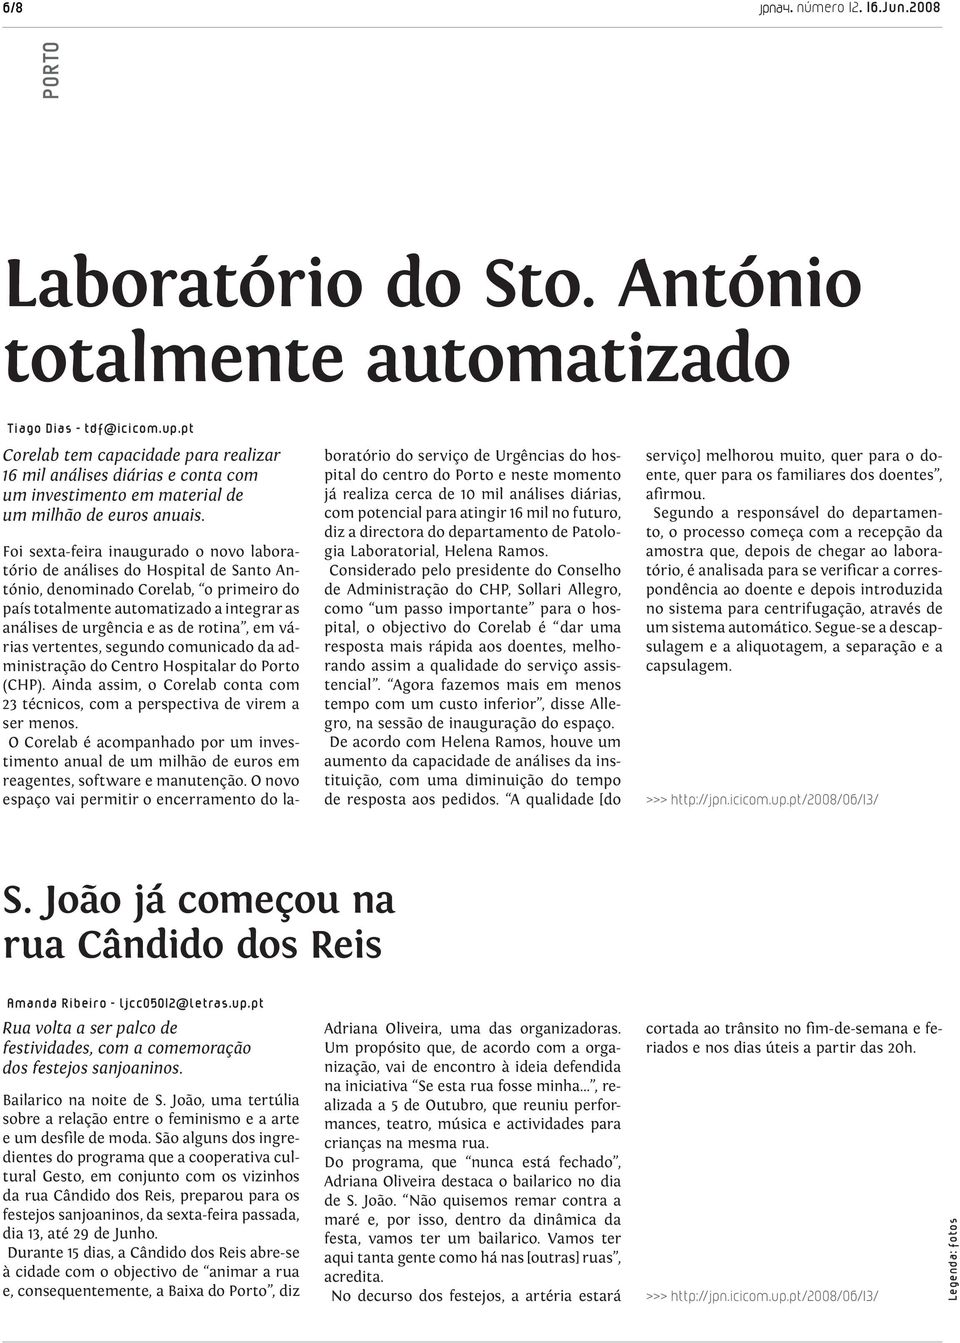 Foi sexta-feira inaugurado o novo laboratório de análises do Hospital de Santo António, denominado Corelab, o primeiro do país totalmente automatizado a integrar as análises de urgência e as de